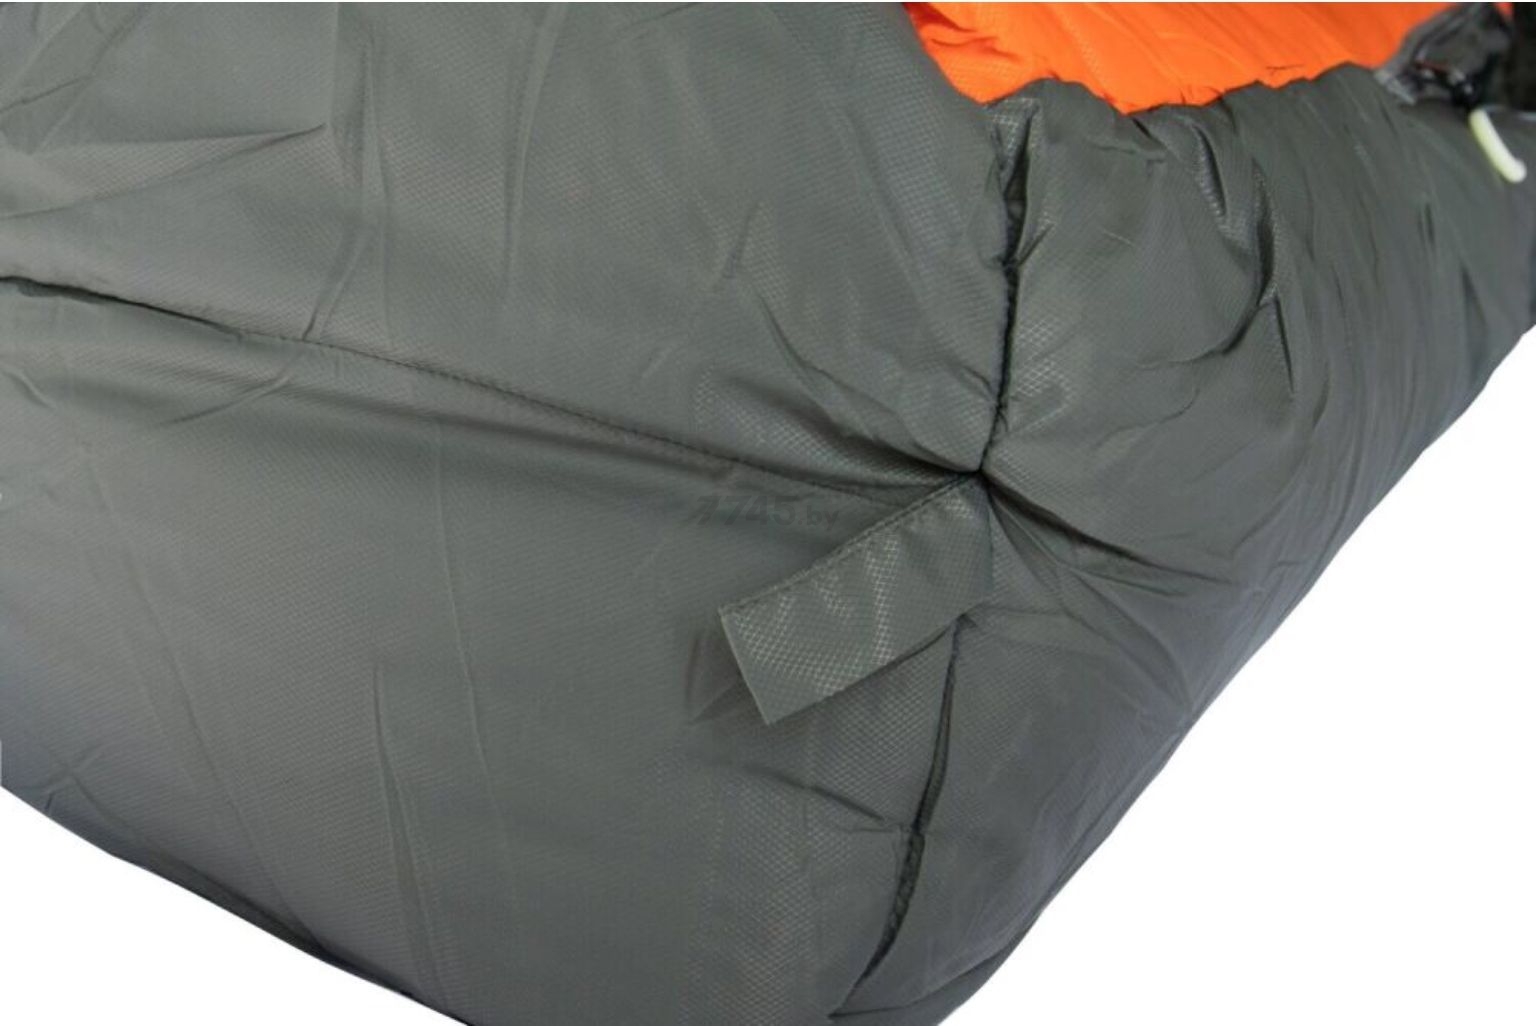 Спальный мешок TRAMP Oimyakon T-Loft Regular левая молния (TRS-048R-LT) - Фото 24